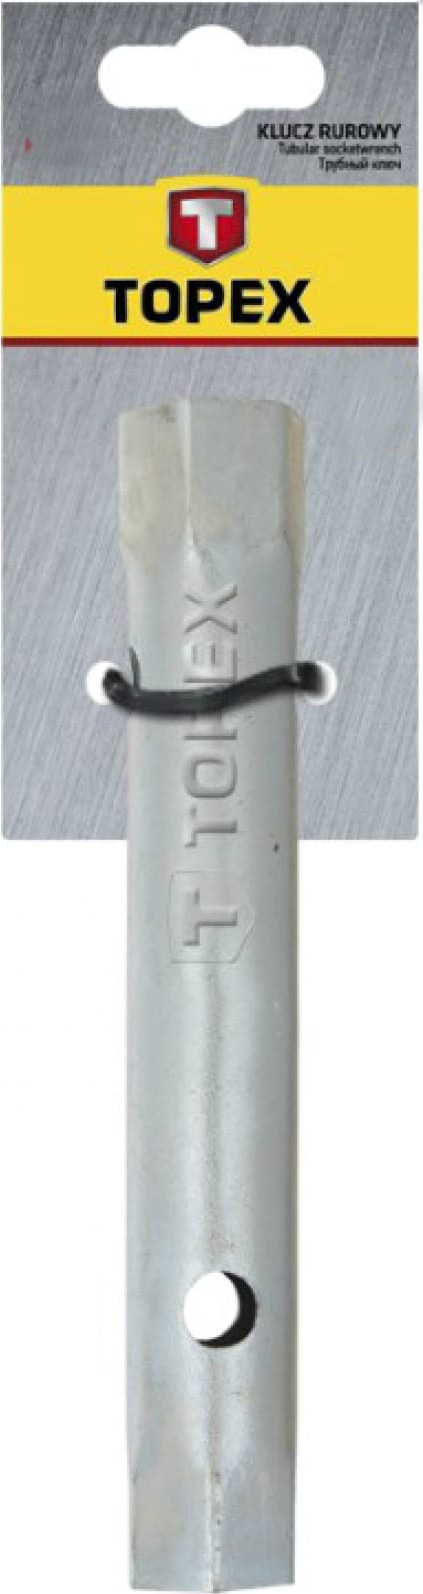 Ключ торцовый двусторонний 30 мм x 32 мм TOPEX